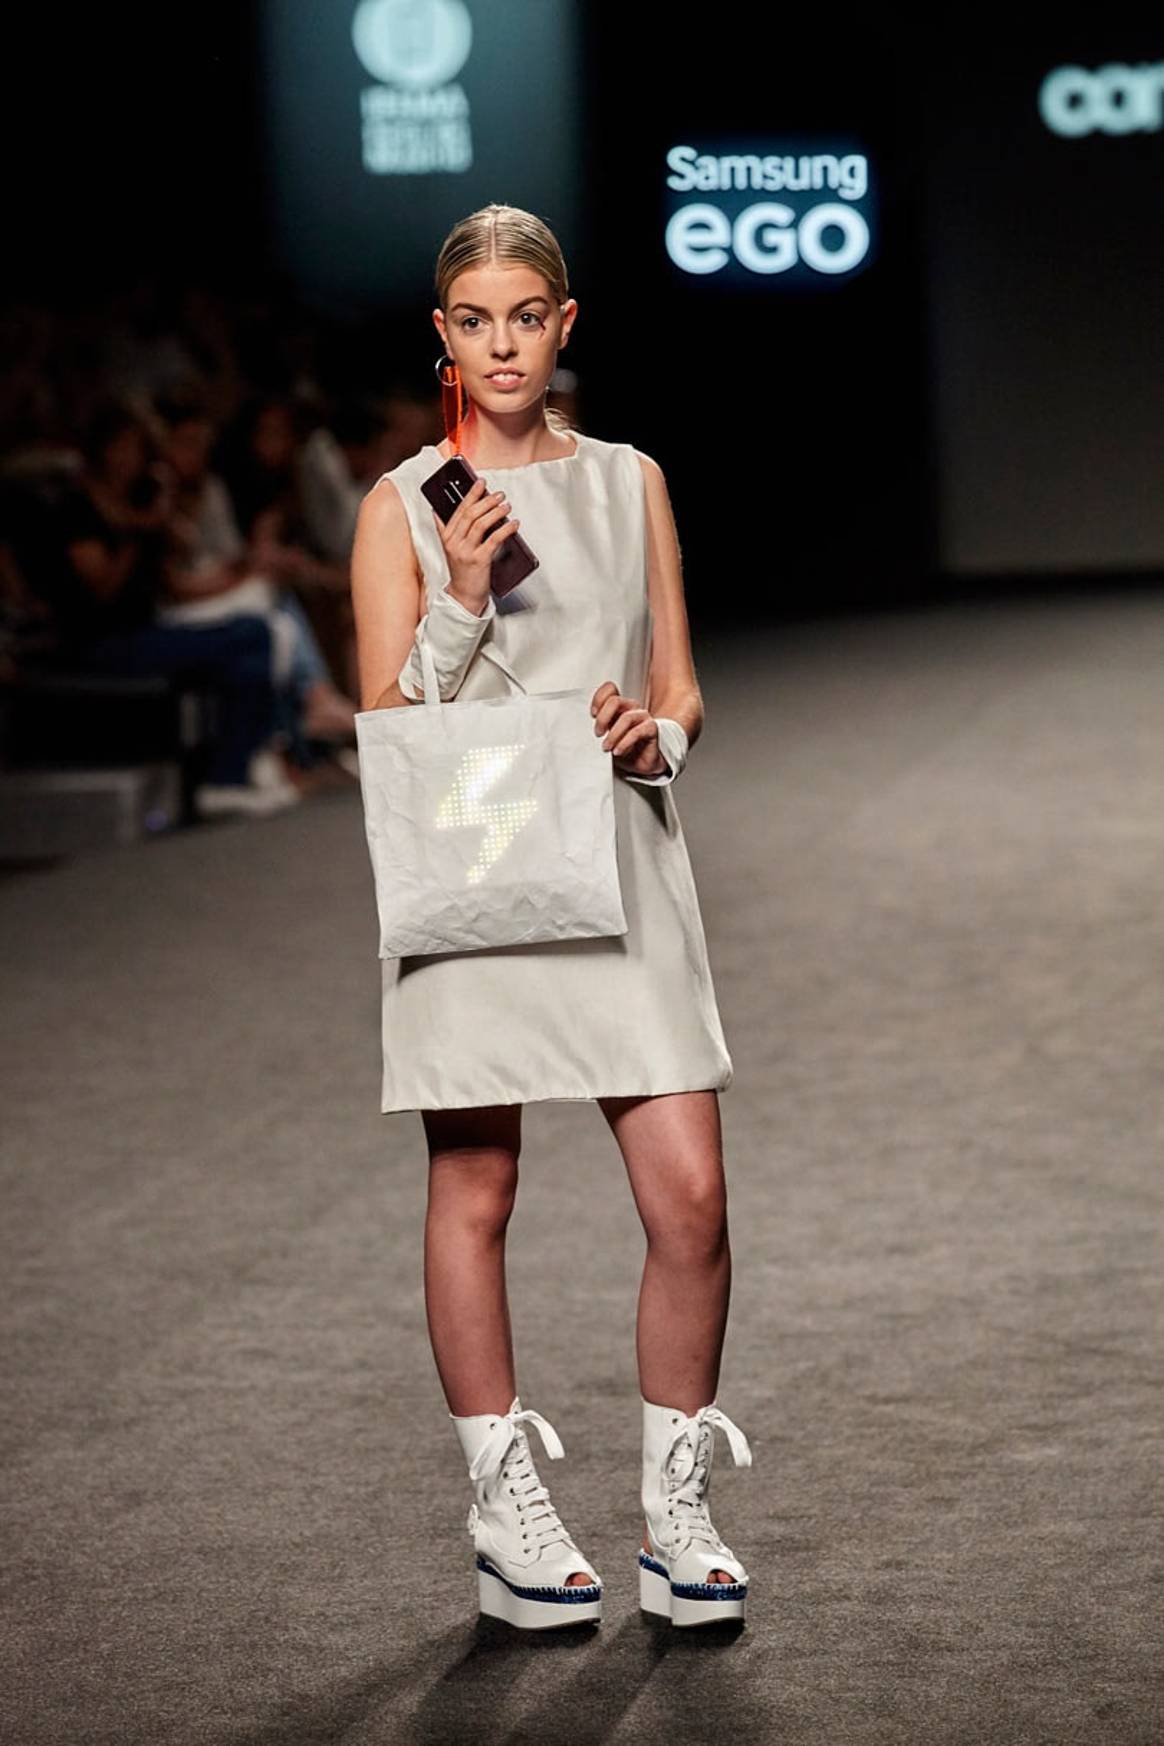 Moda emocional en la 10ª edición de Samsung EGO Innovation Project